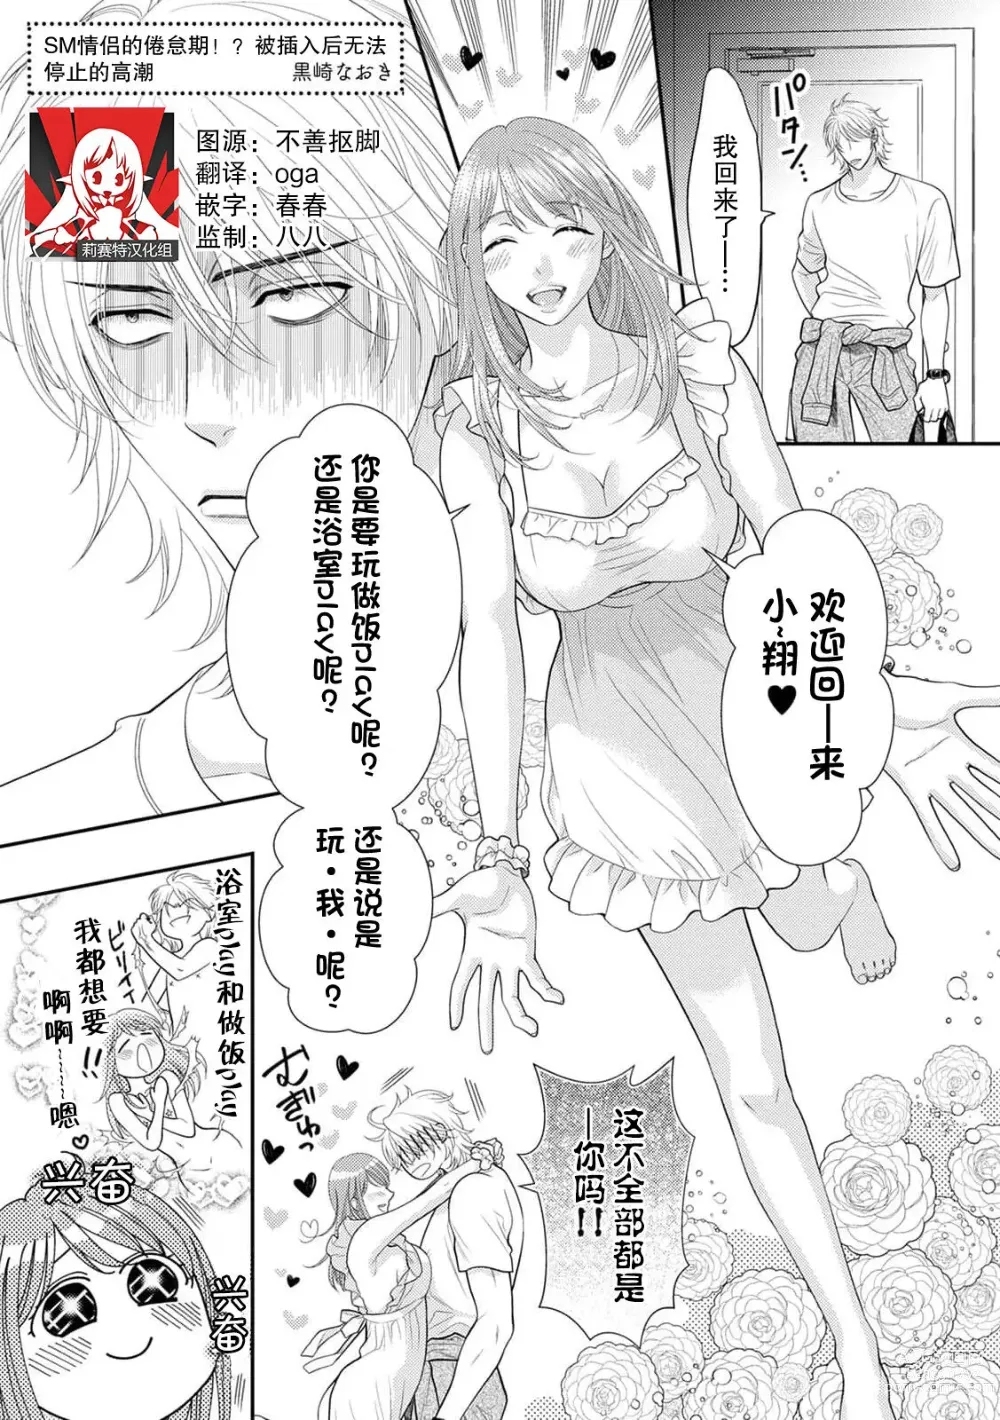 Page 1 of manga SM情侣的倦怠期！？被插入后无法停止的高潮